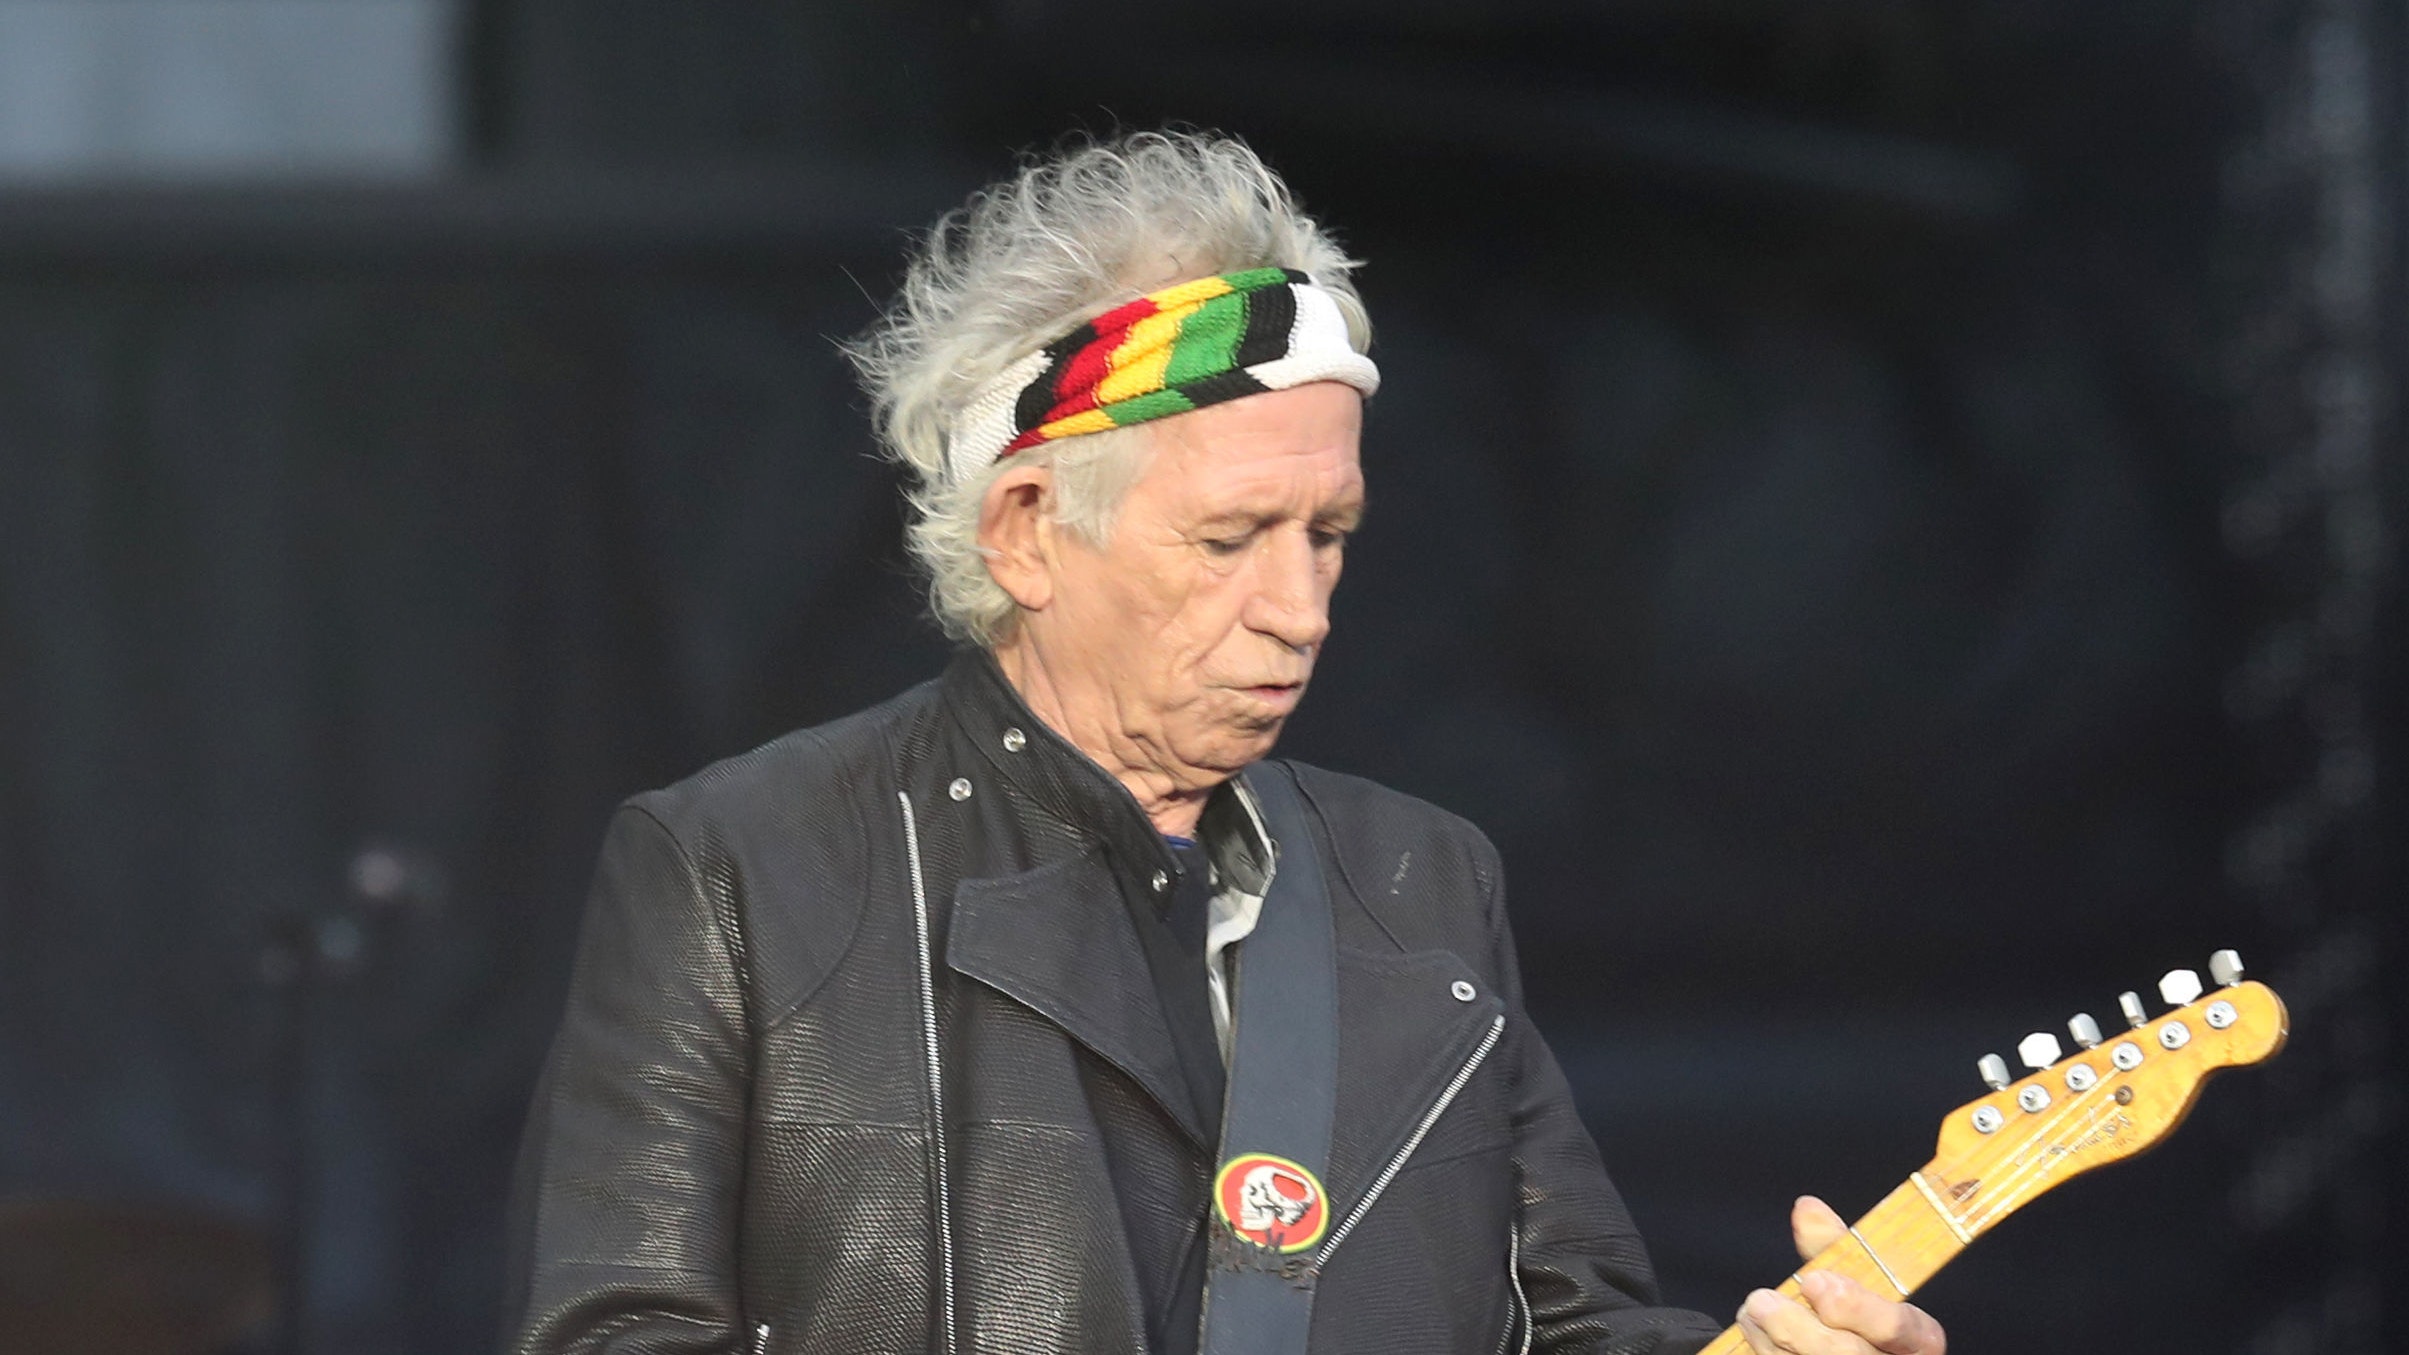 Keith Richards de The Rolling Stones, declara que su adicción al alcohol la superó. Cusica Plus.